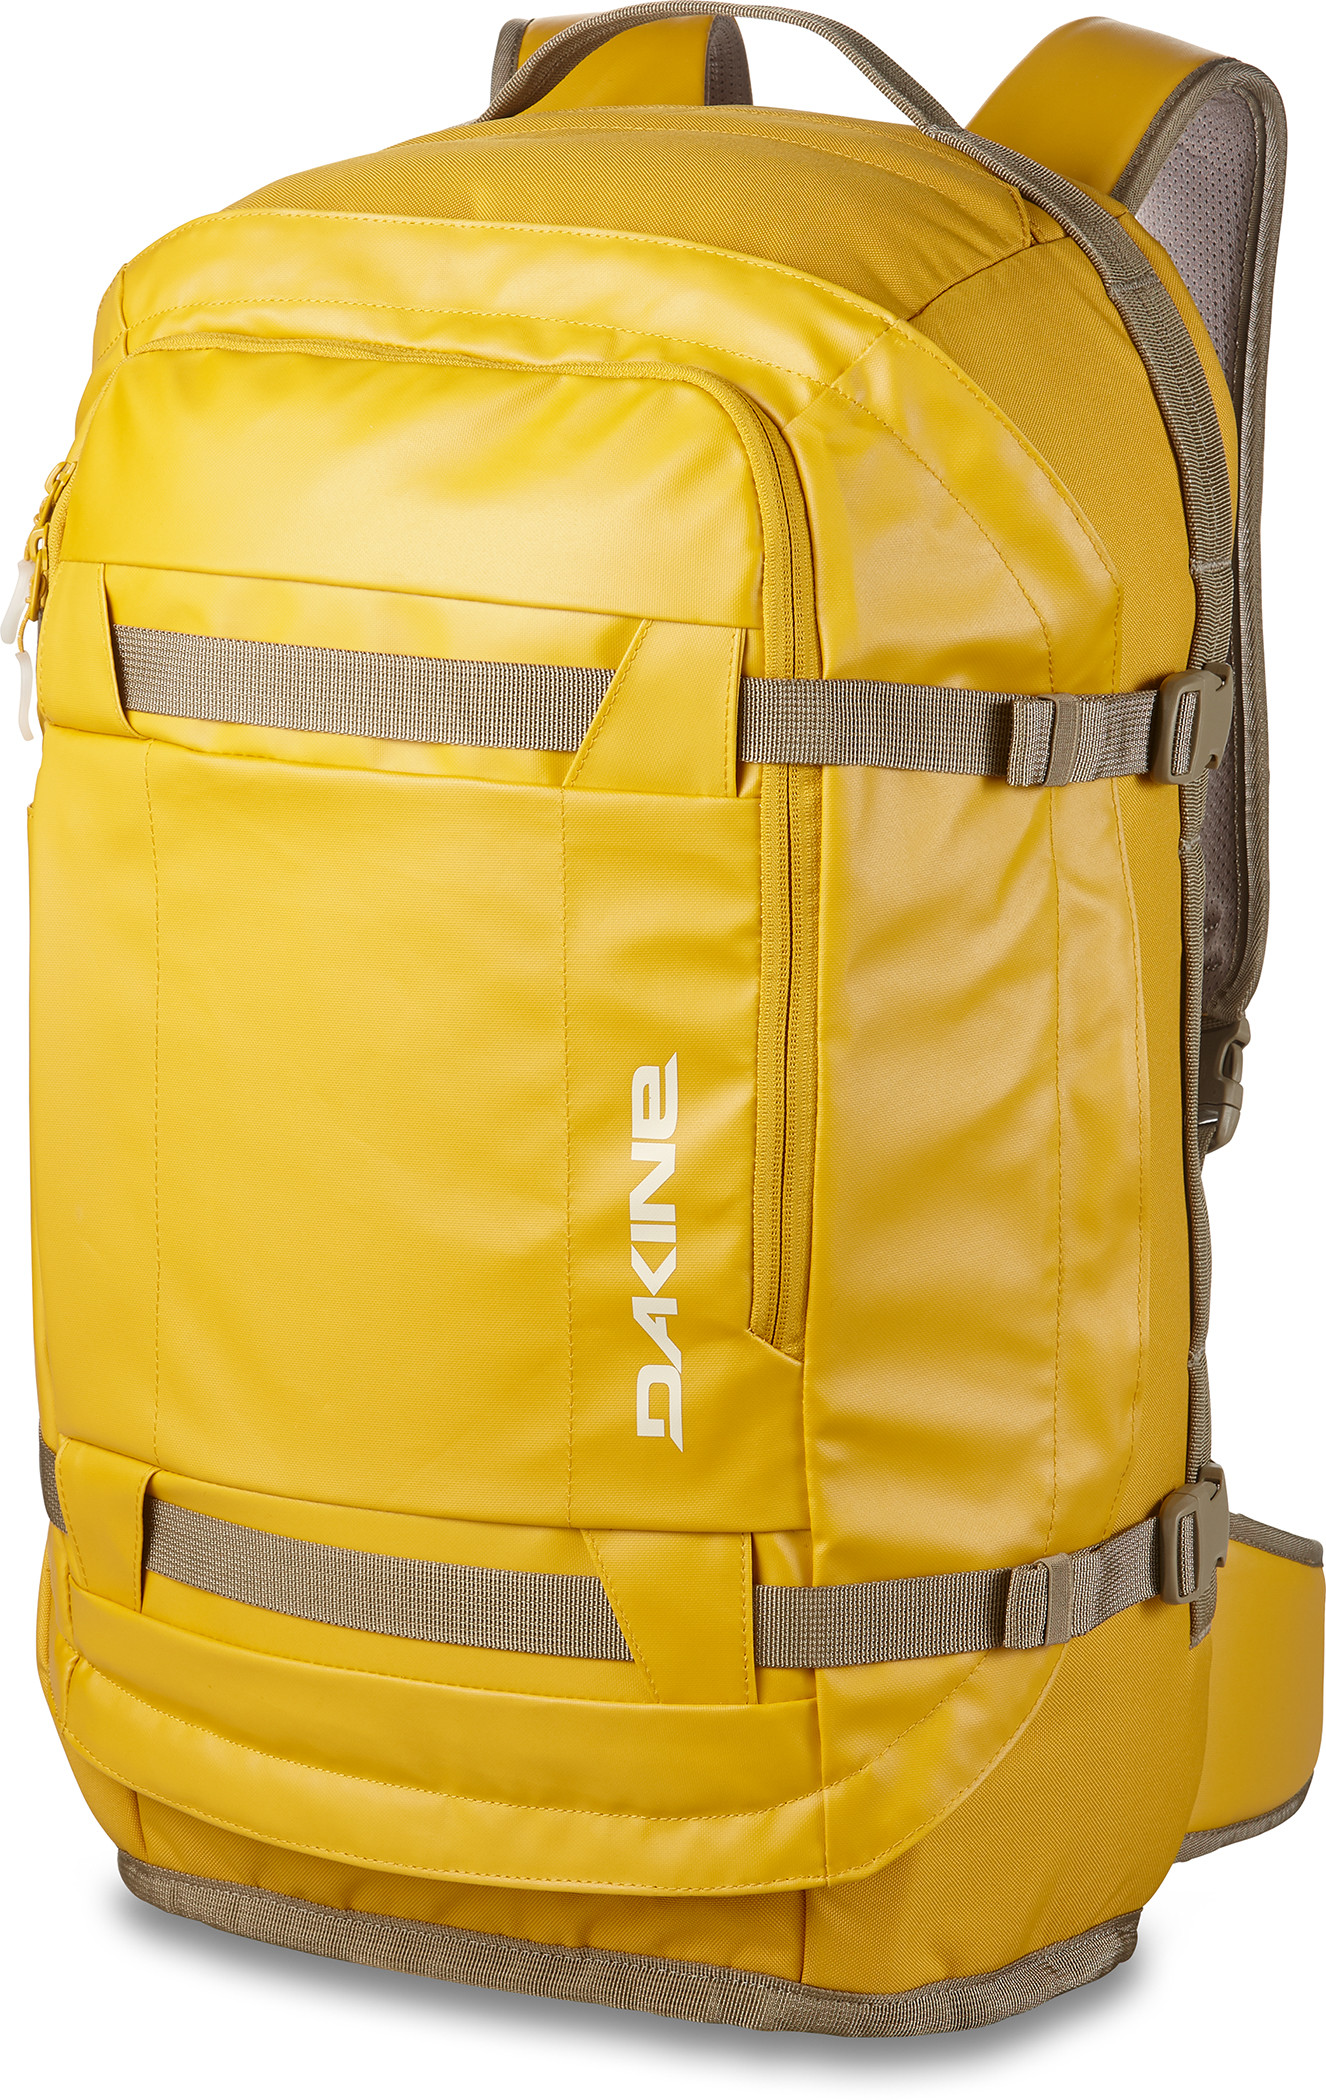 Ranger Travel 45L Backpack